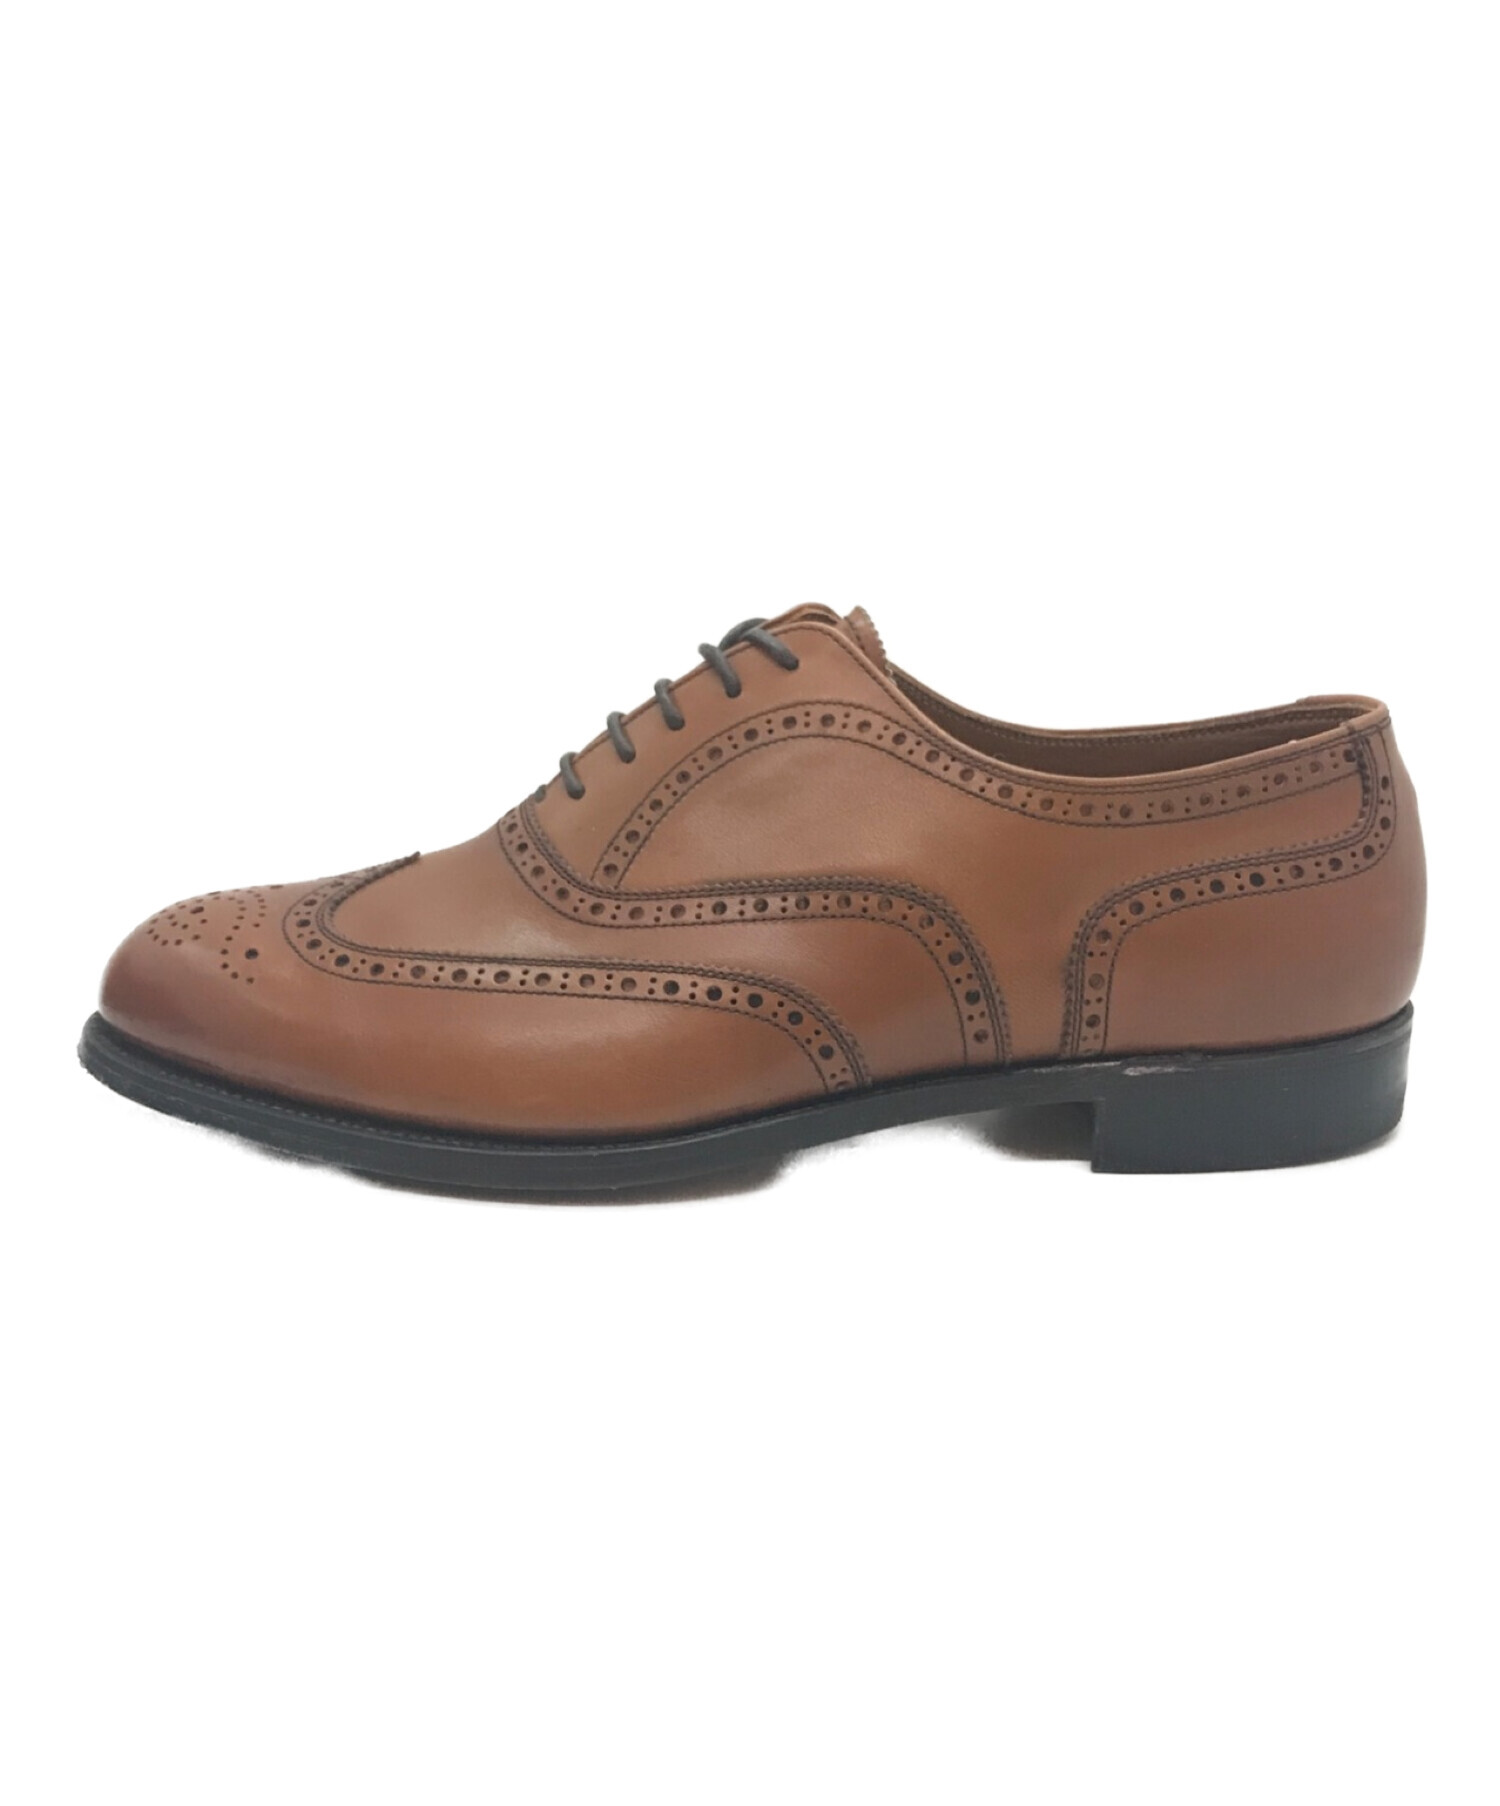 SCOTCH GRAIN (スコッチグレイン) ウィングチップフルブローグシューズ / 革靴 / レザーシューズ ブラウン サイズ:25.5㎝